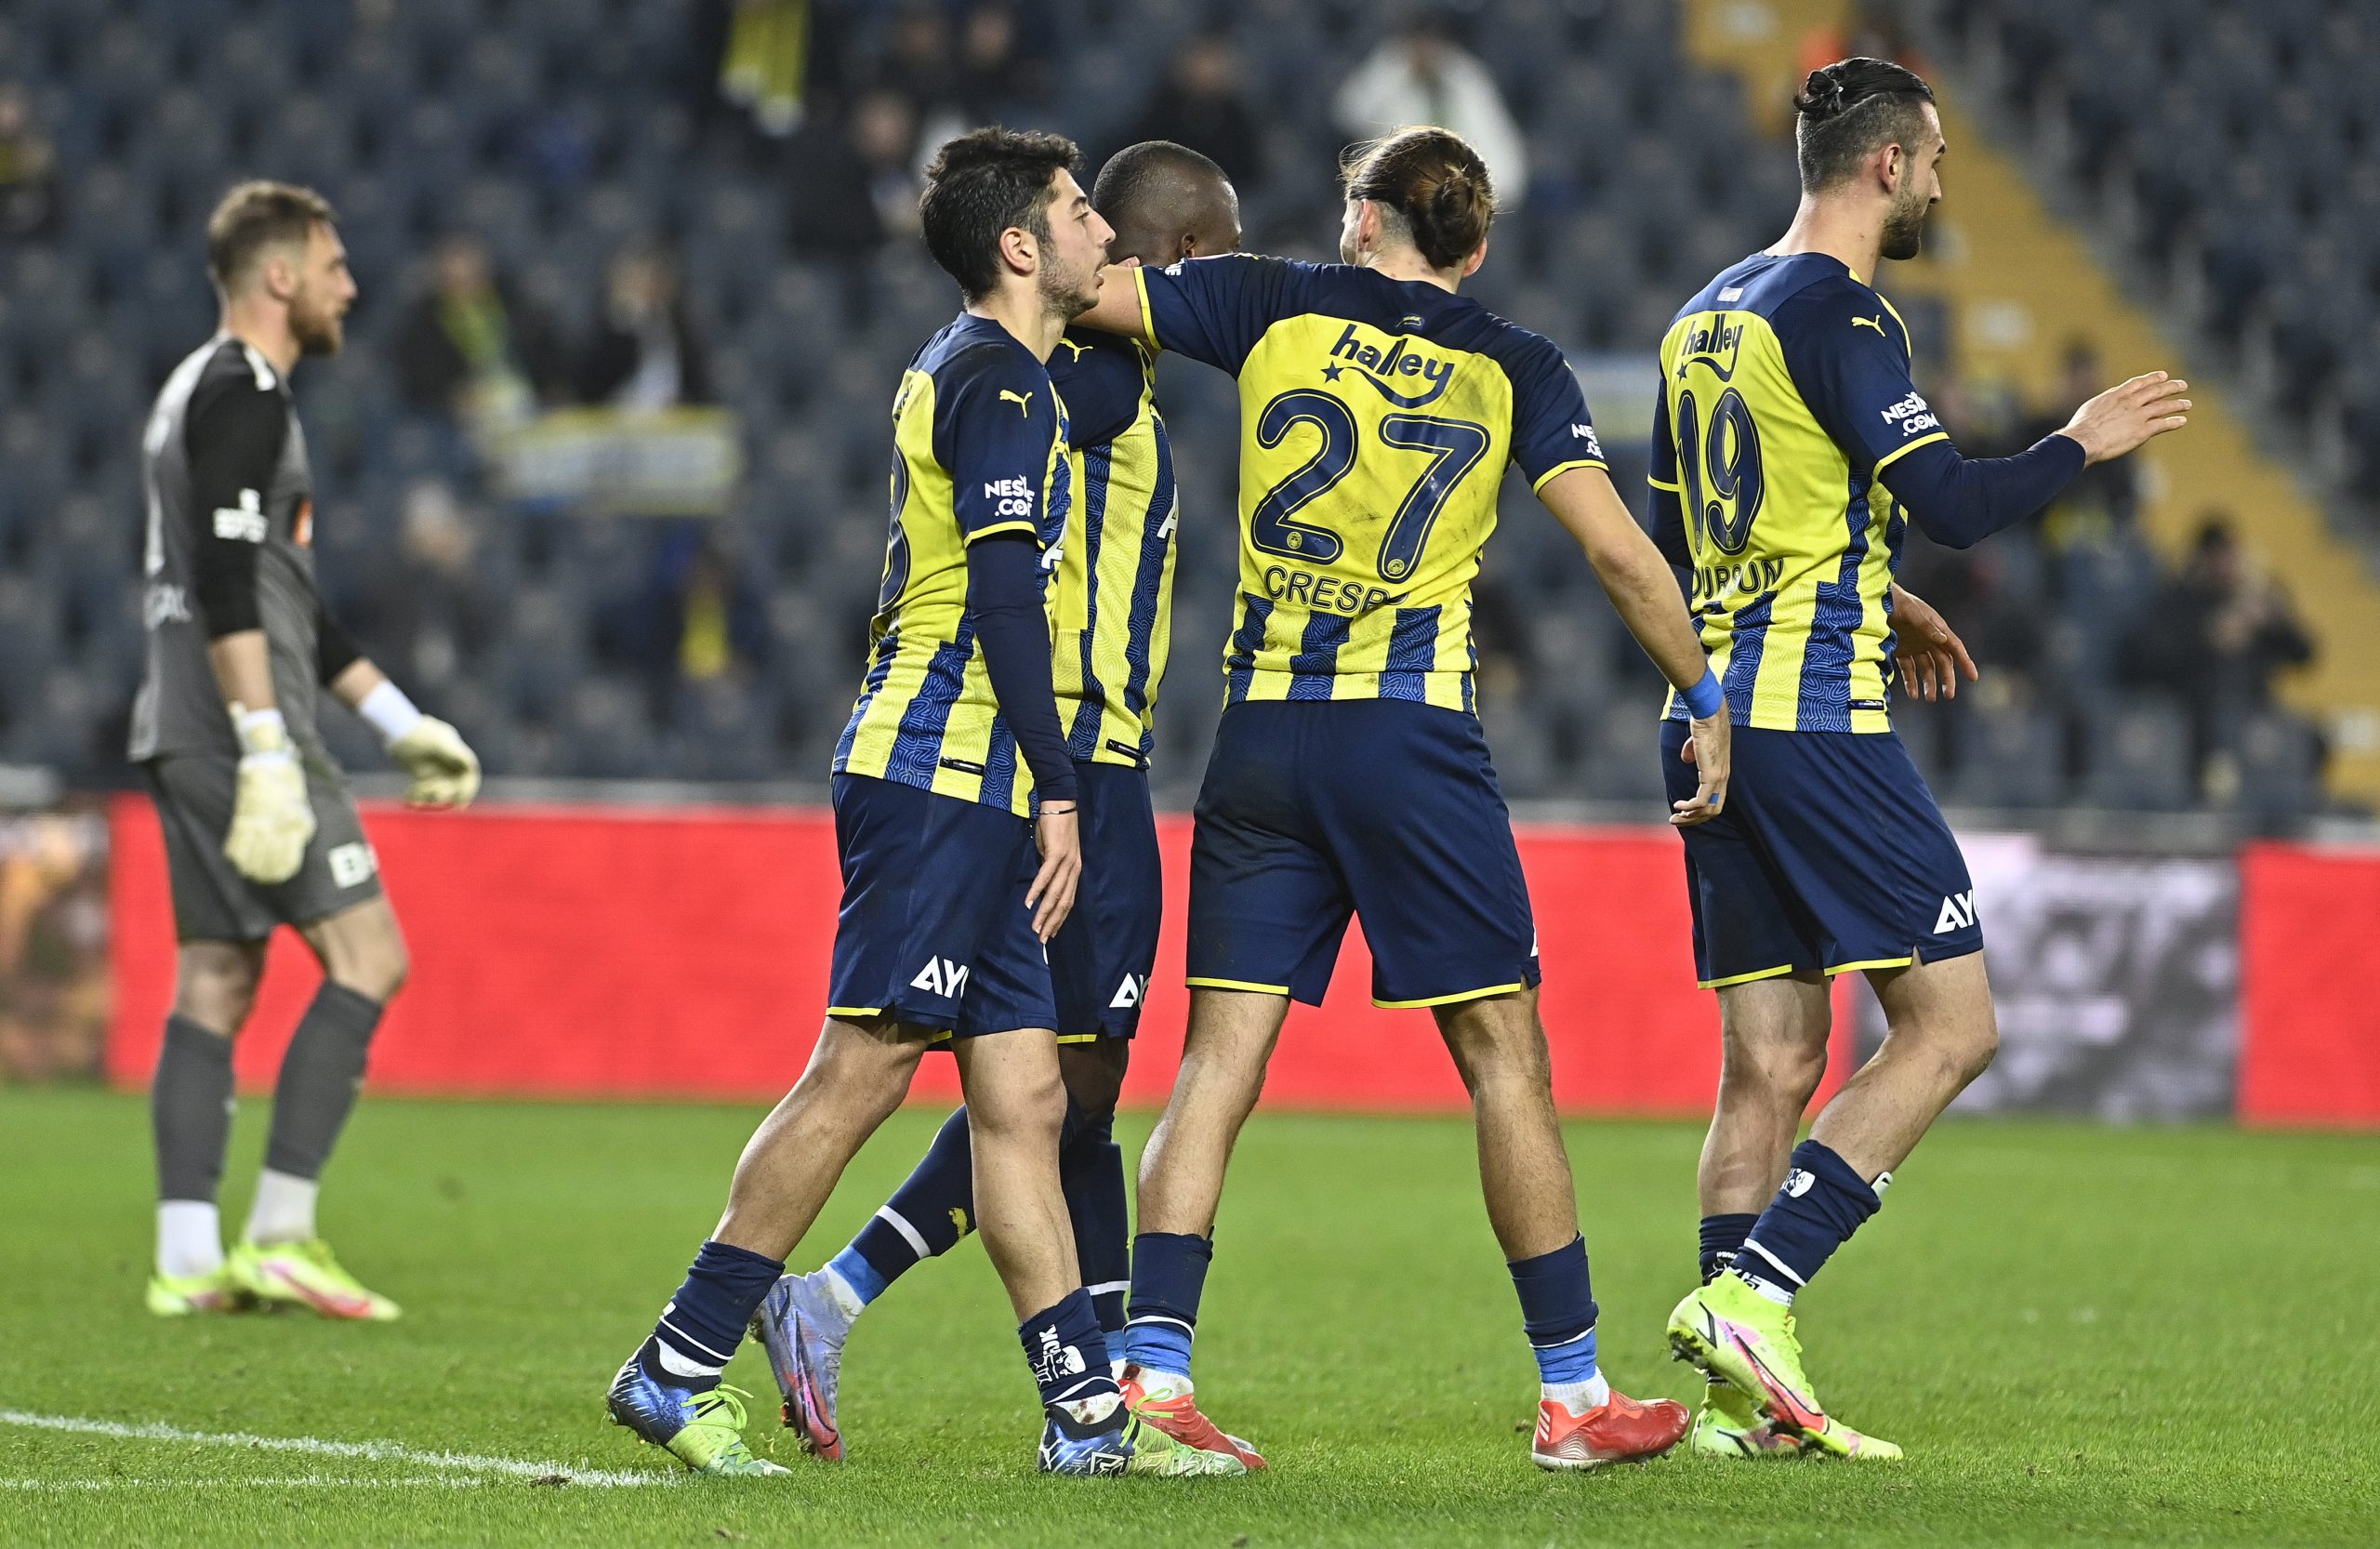 Fenerbahçe turu uzatma devresinde atladı 2-0